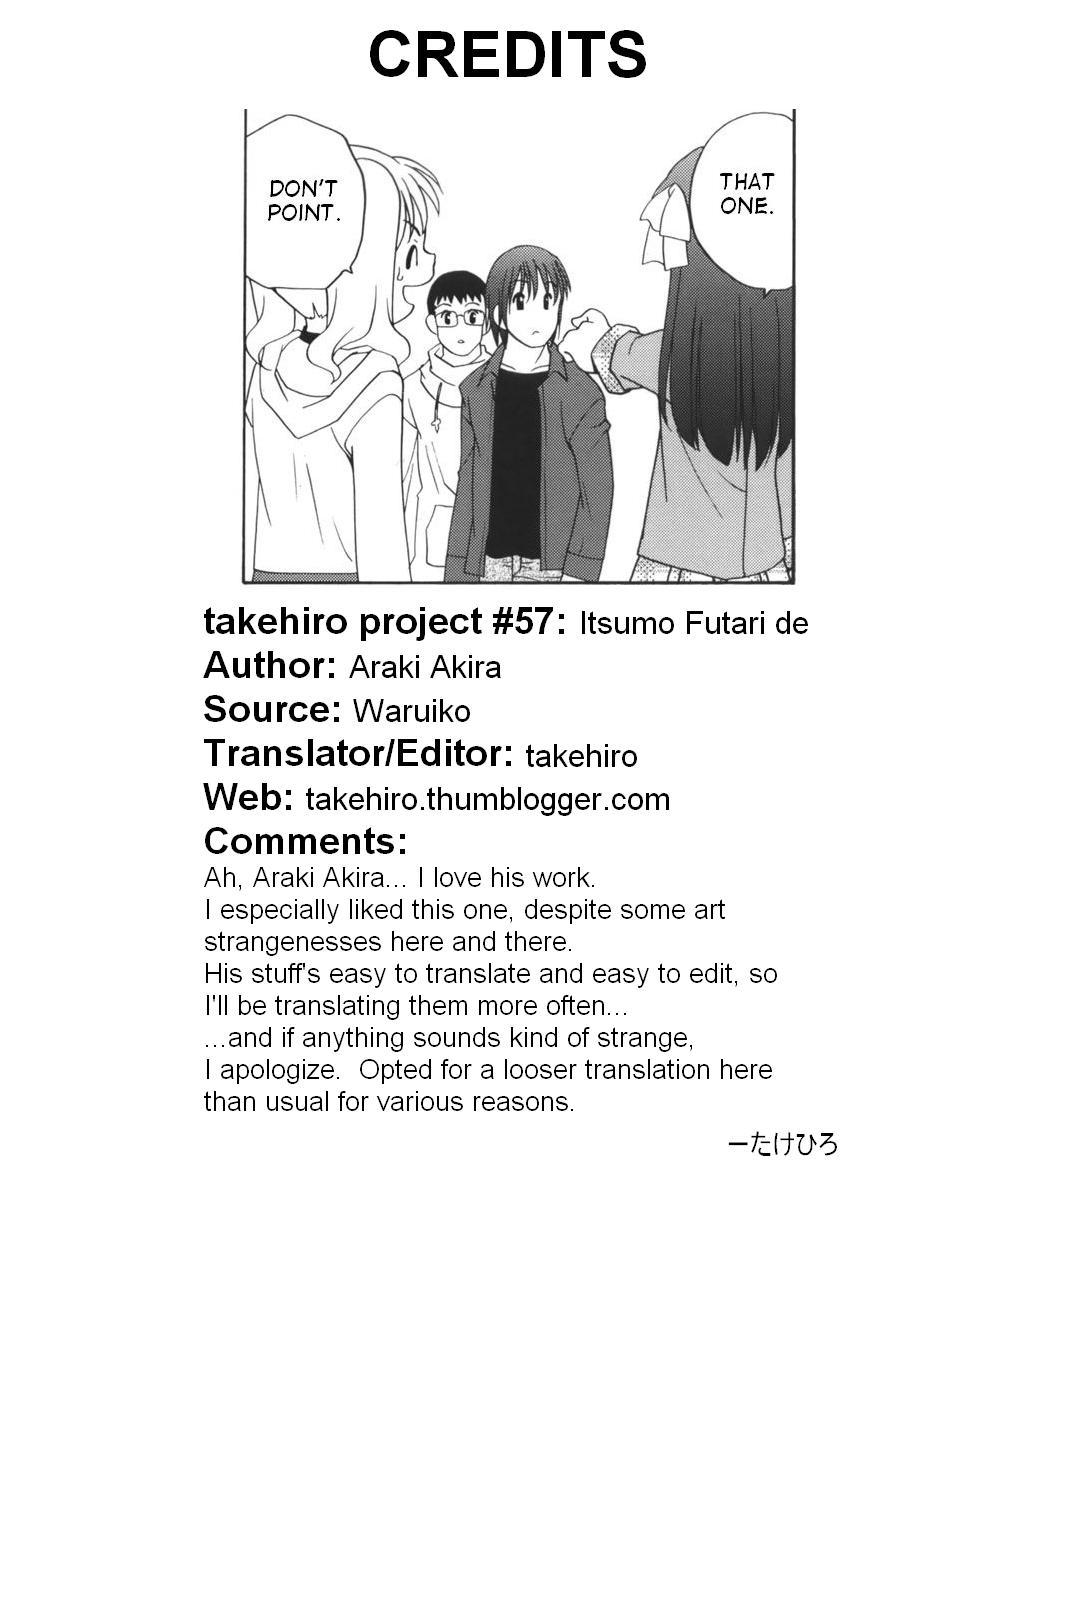 Itsumo Futari de 16 hentai manga